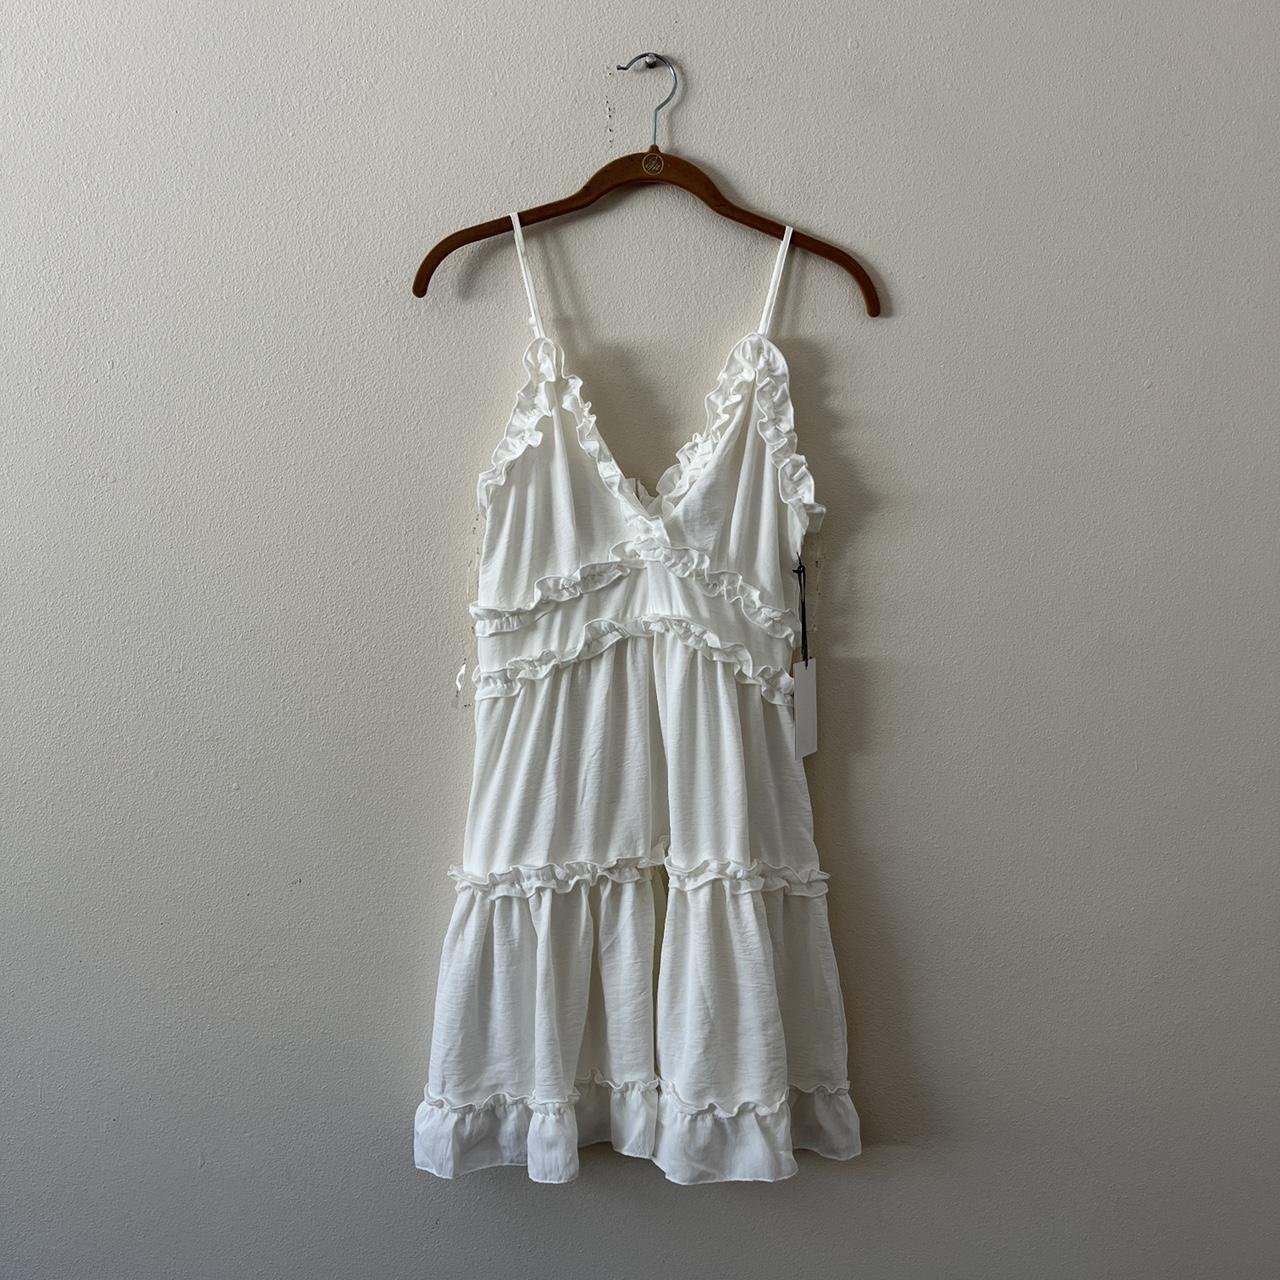 Product Image 2 - White Ruffled Dress 

• item